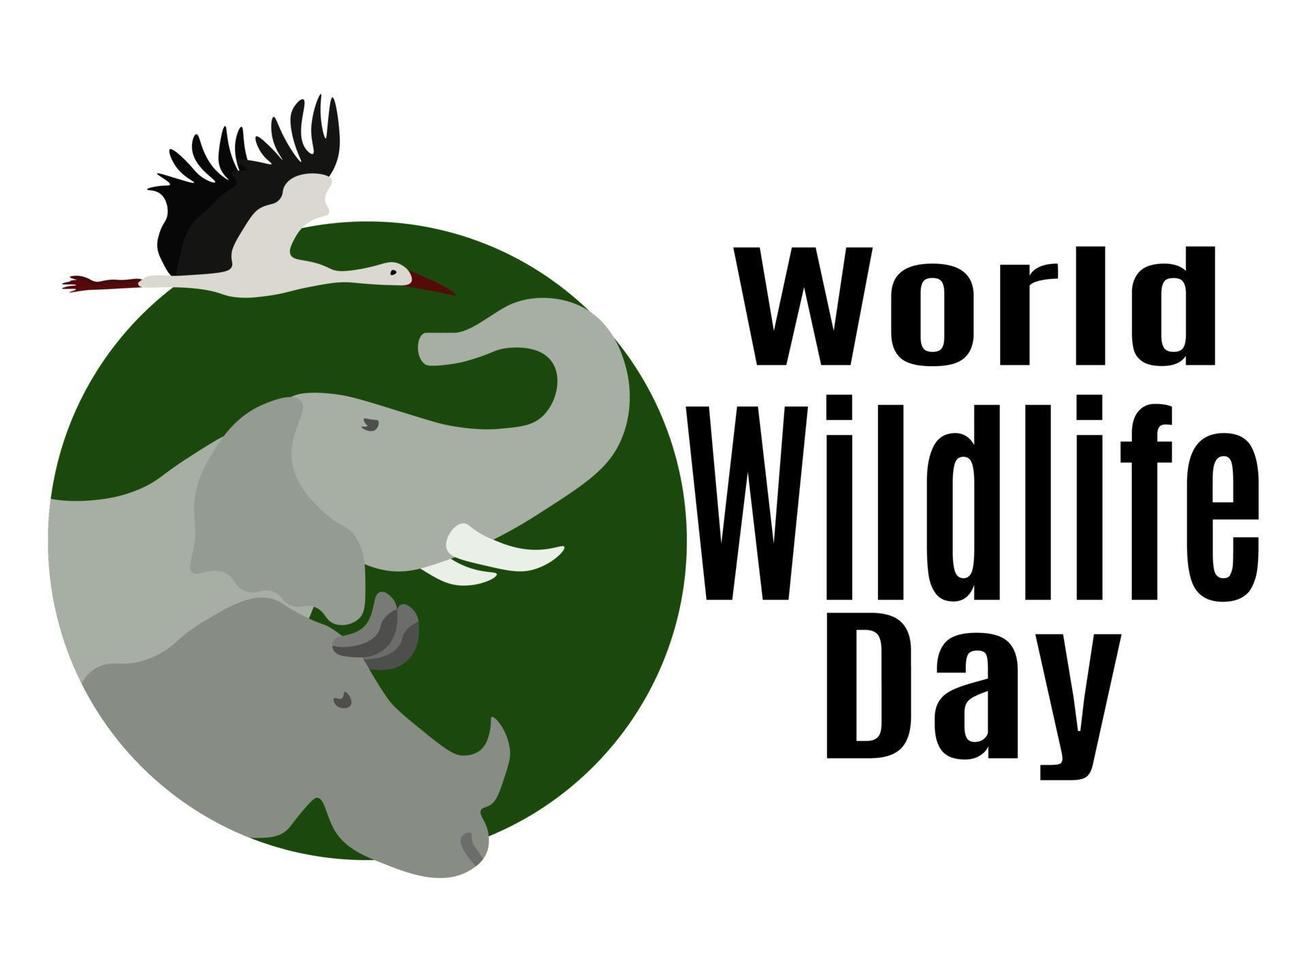 dia mundial da vida selvagem, ideia para cartaz, banner, panfleto ou cartão postal vetor